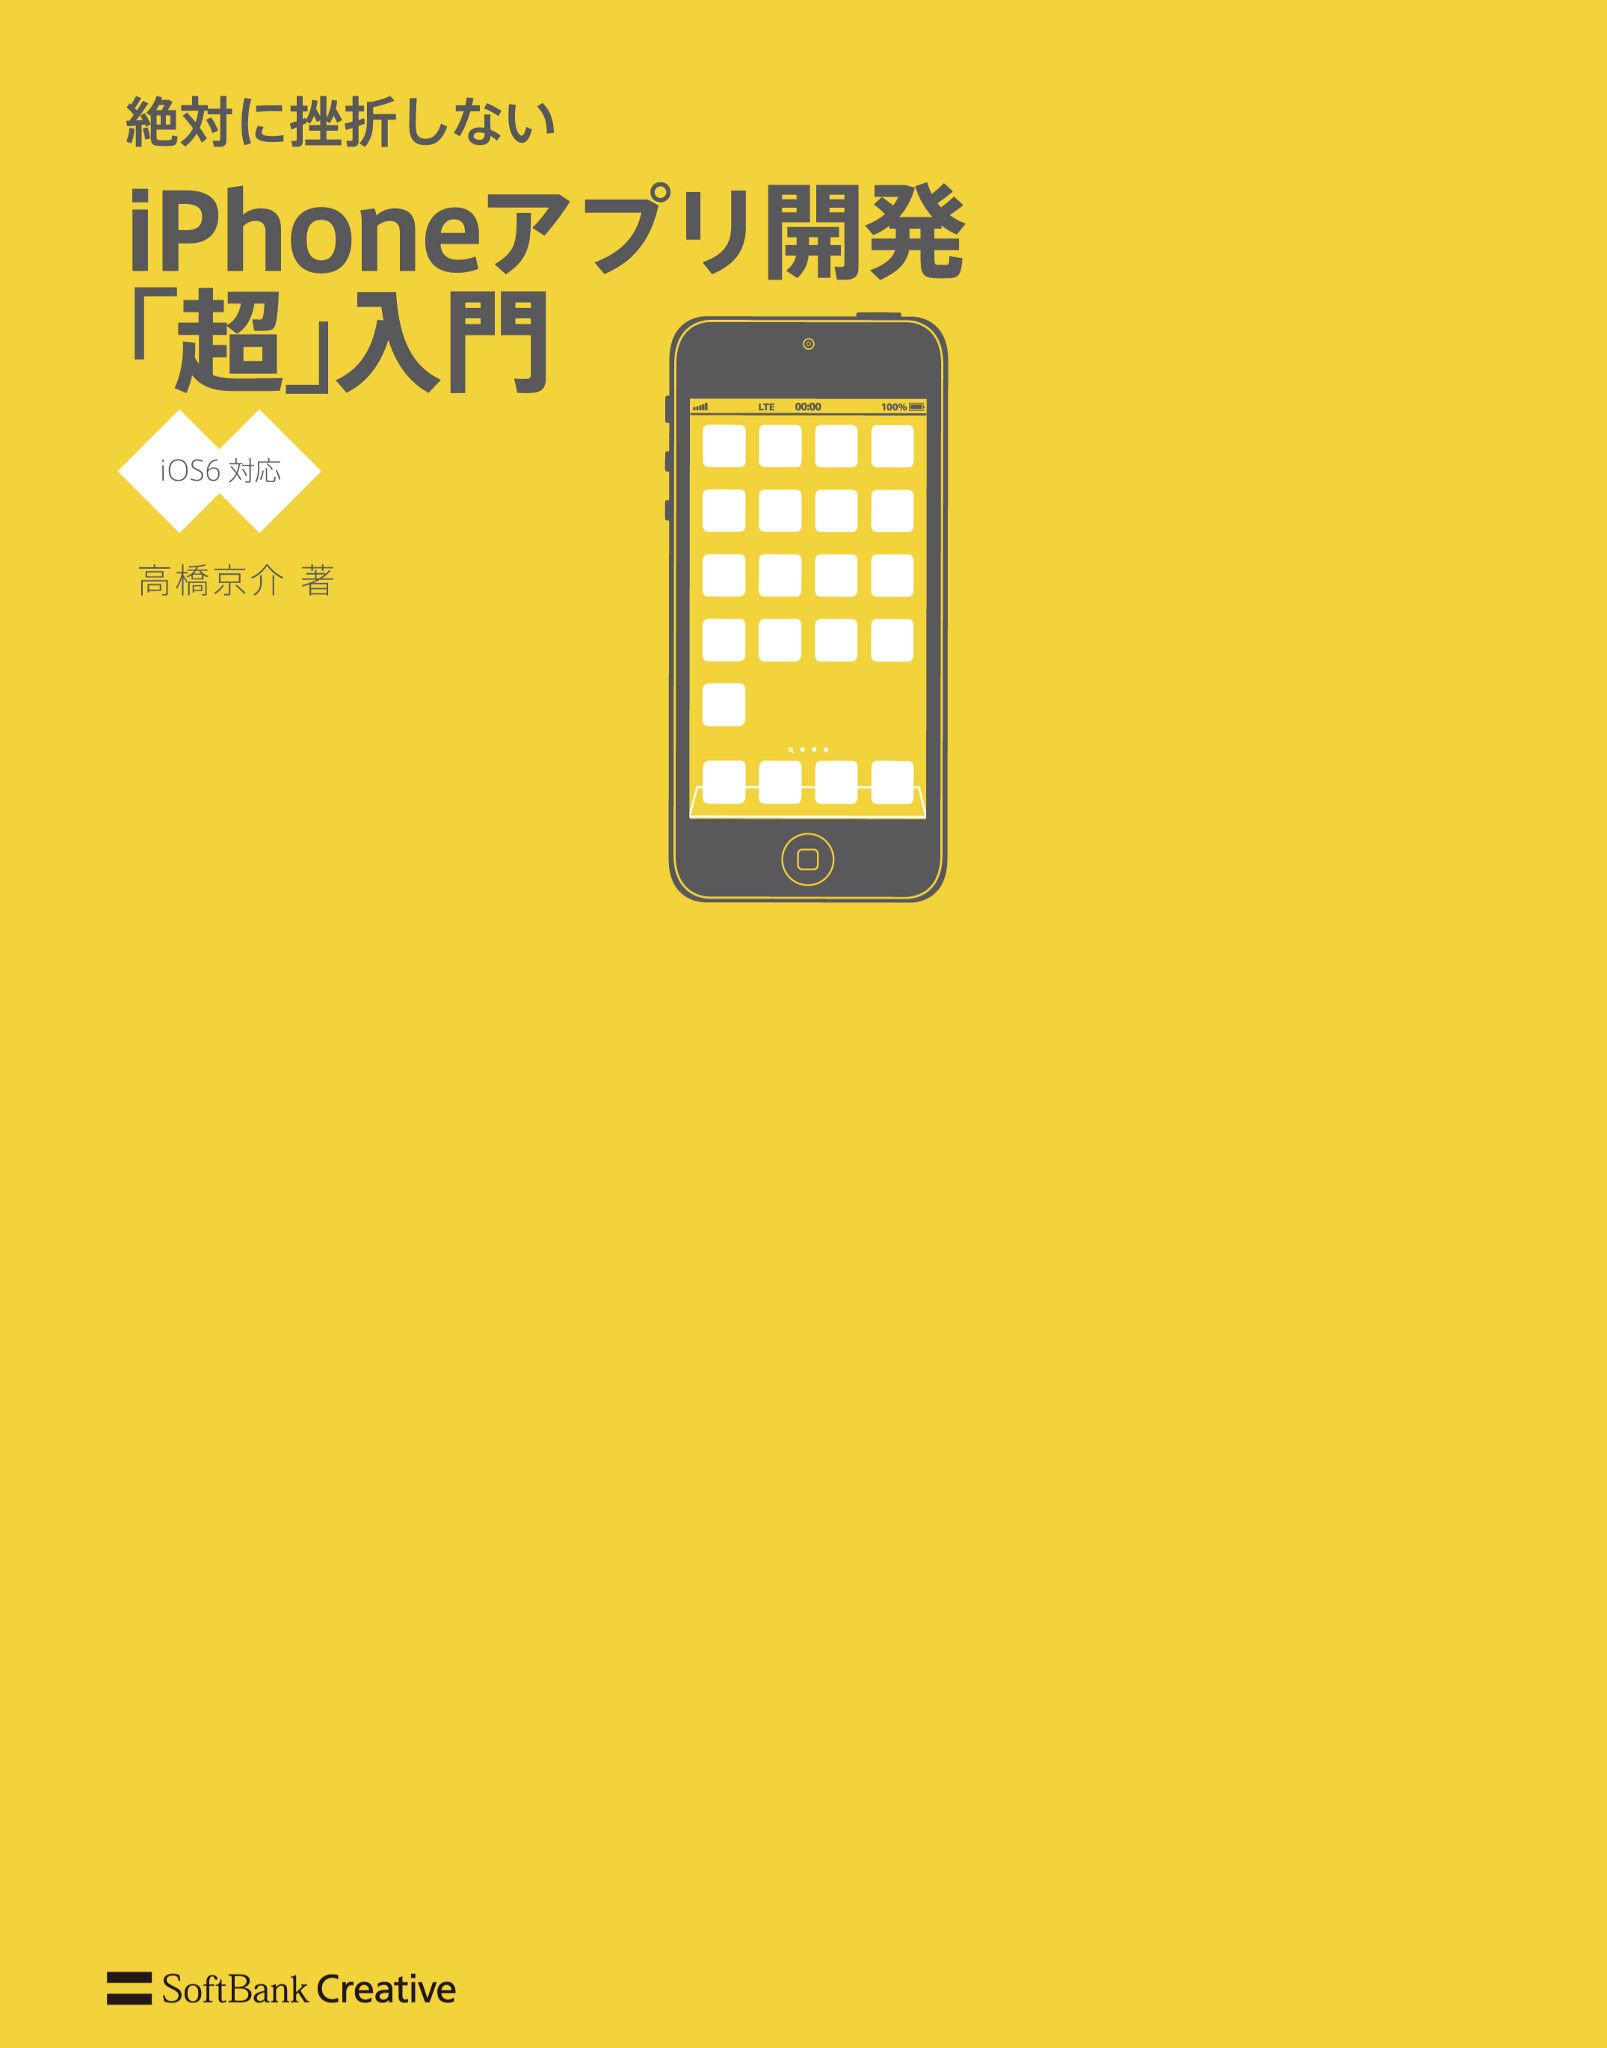 絶対に挫折しない iPhoneアプリ開発「超」入門【iOS6対応】 - 高橋京介